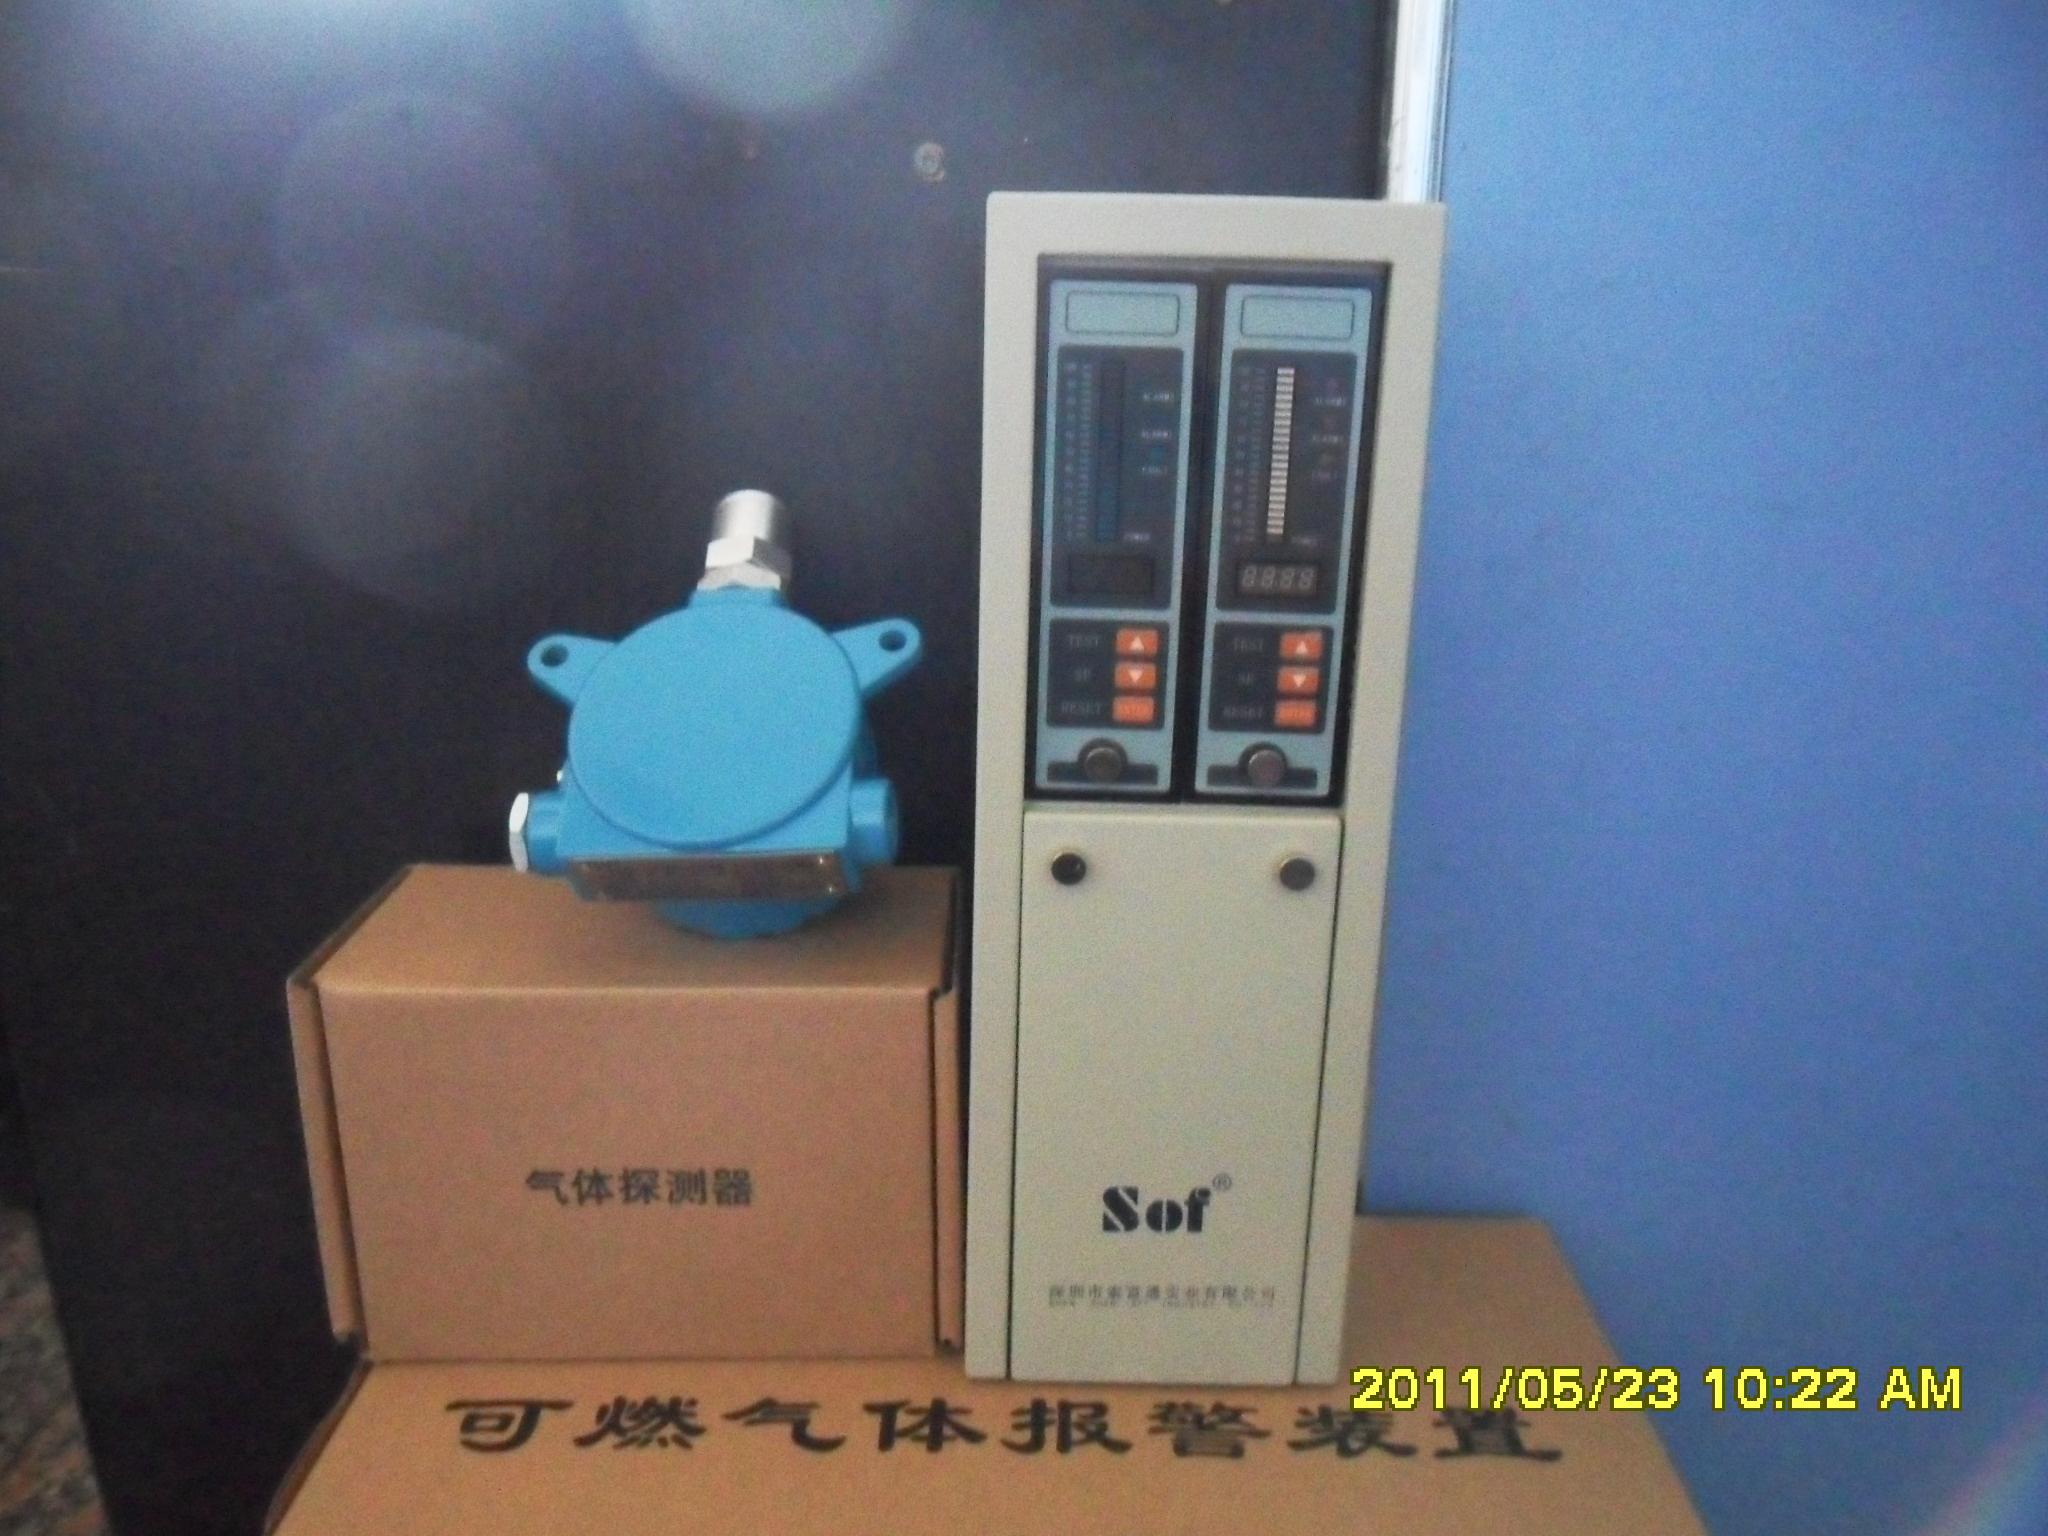 可燃气体报警器SST-9801A、深圳可燃气体报警器SST-9801A